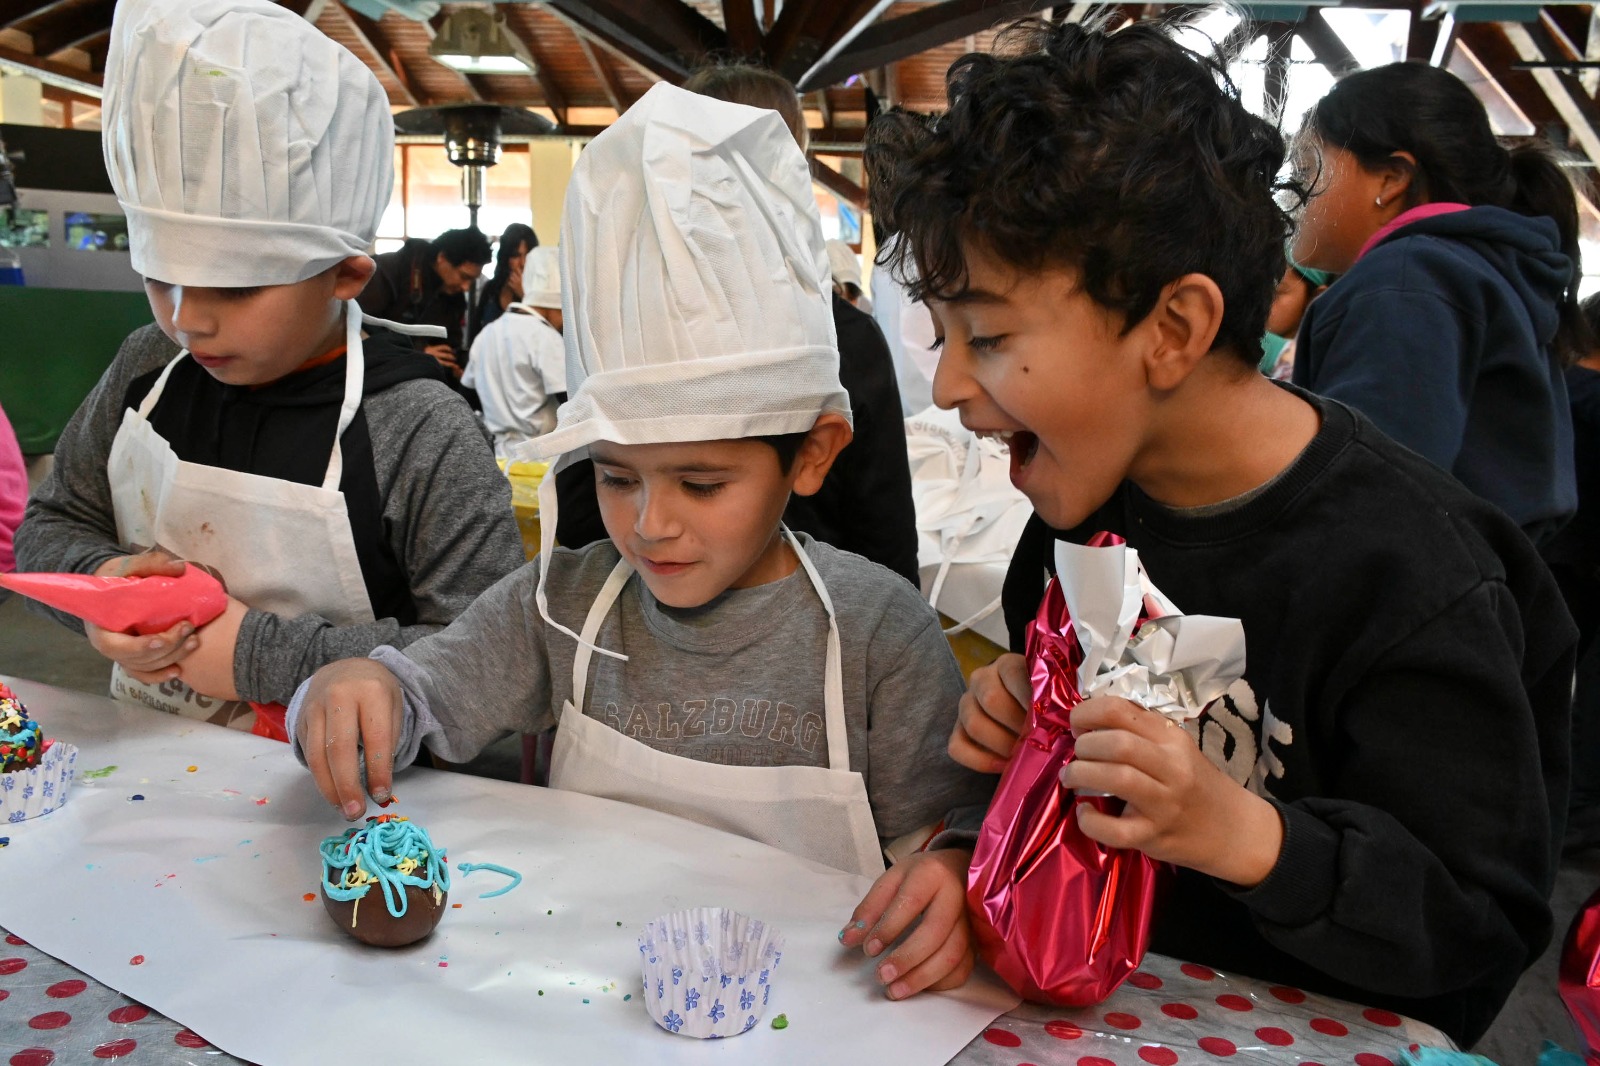 El entusiasmo de los niños al ser "chocolateros por un día" puso el color al arranque de la Fiesta del Chocolate en Bariloche. Foto: Chino Leiva